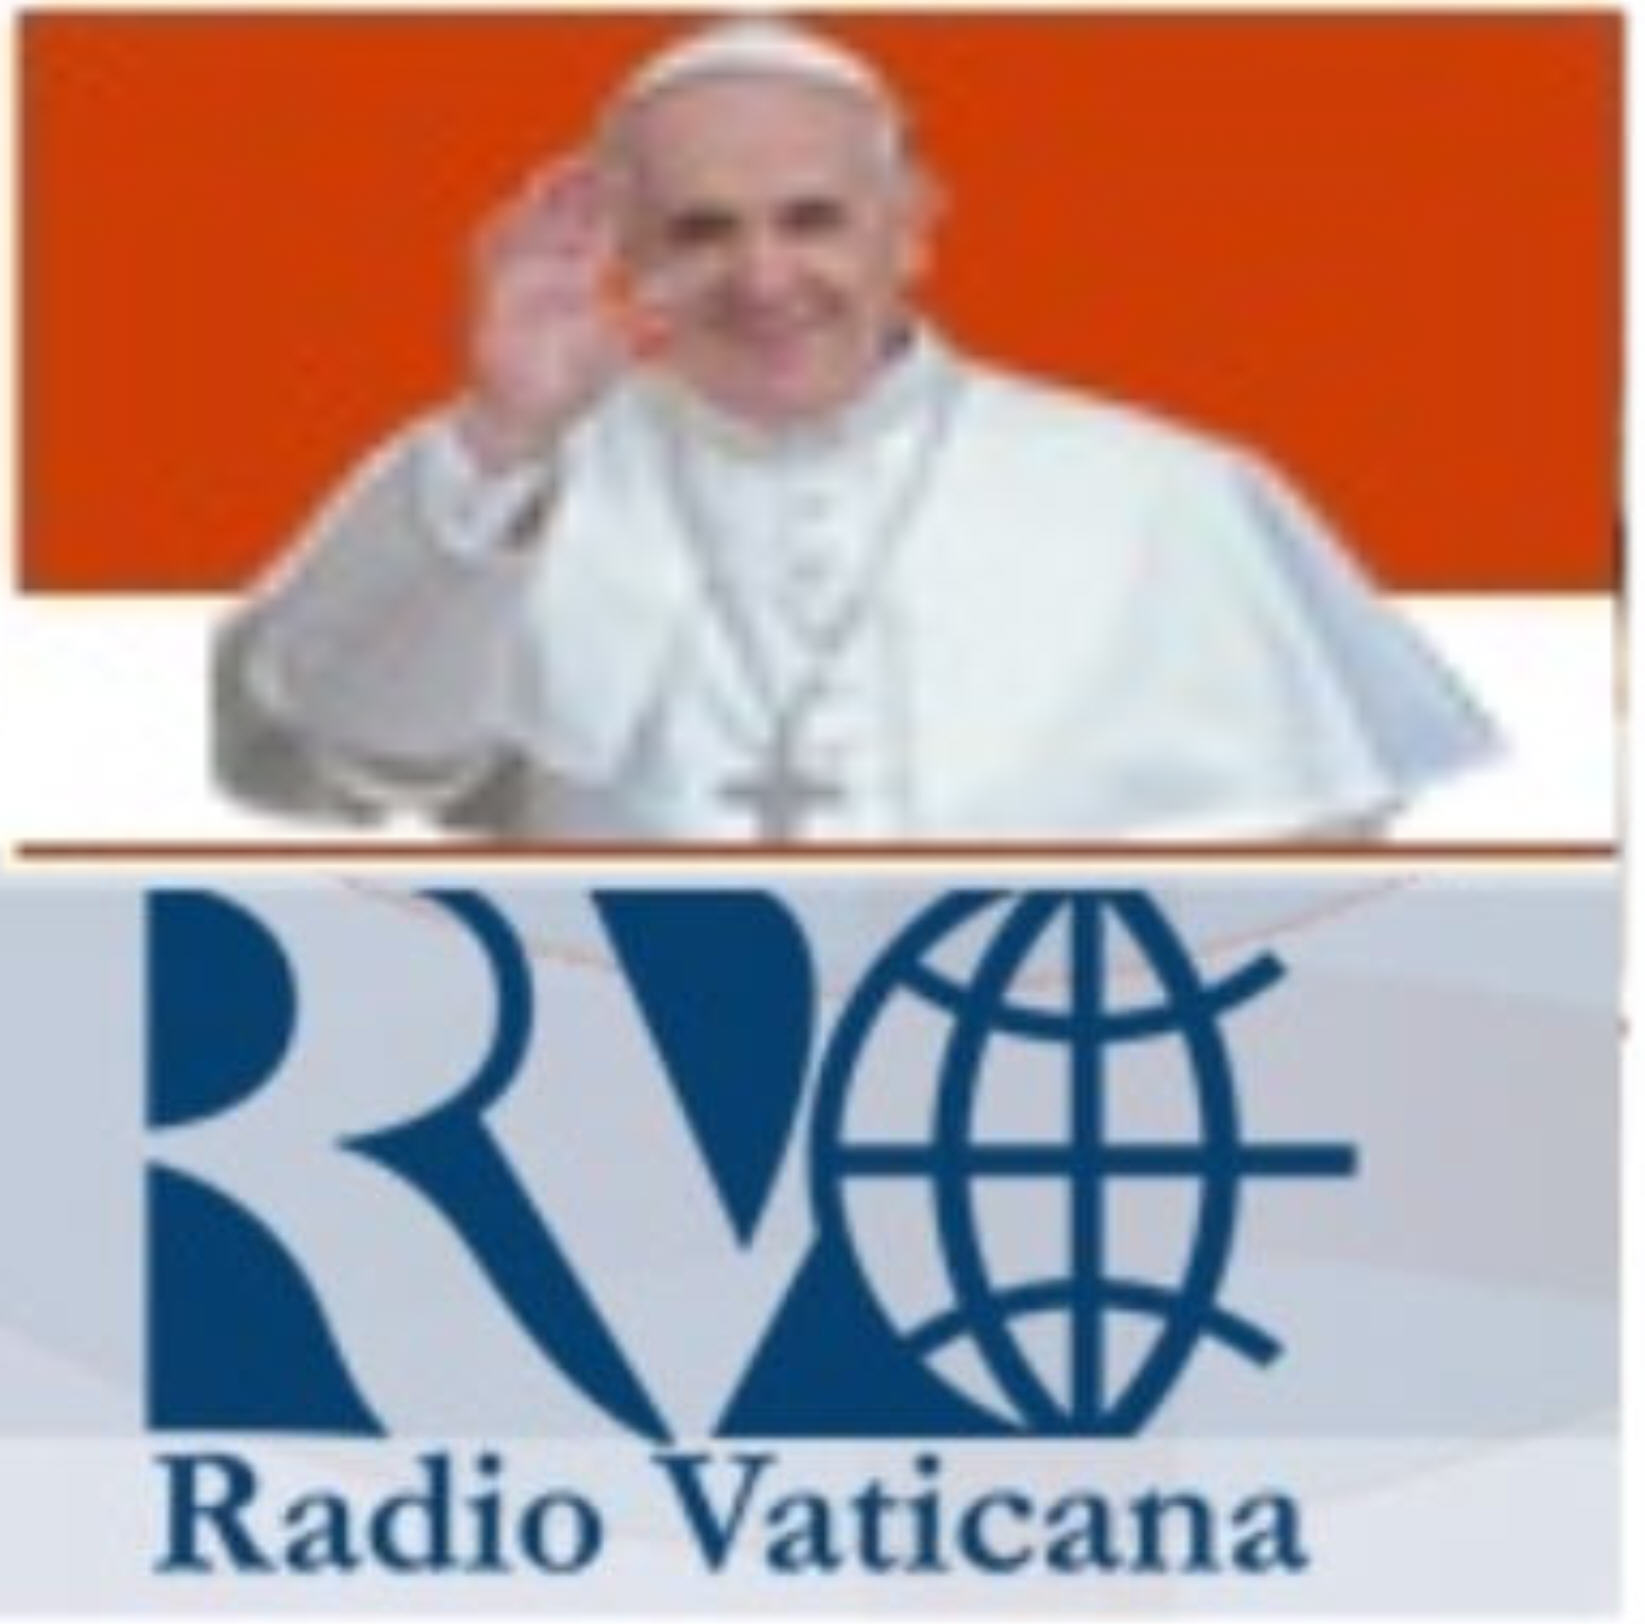 http://www.radiovaticana.de